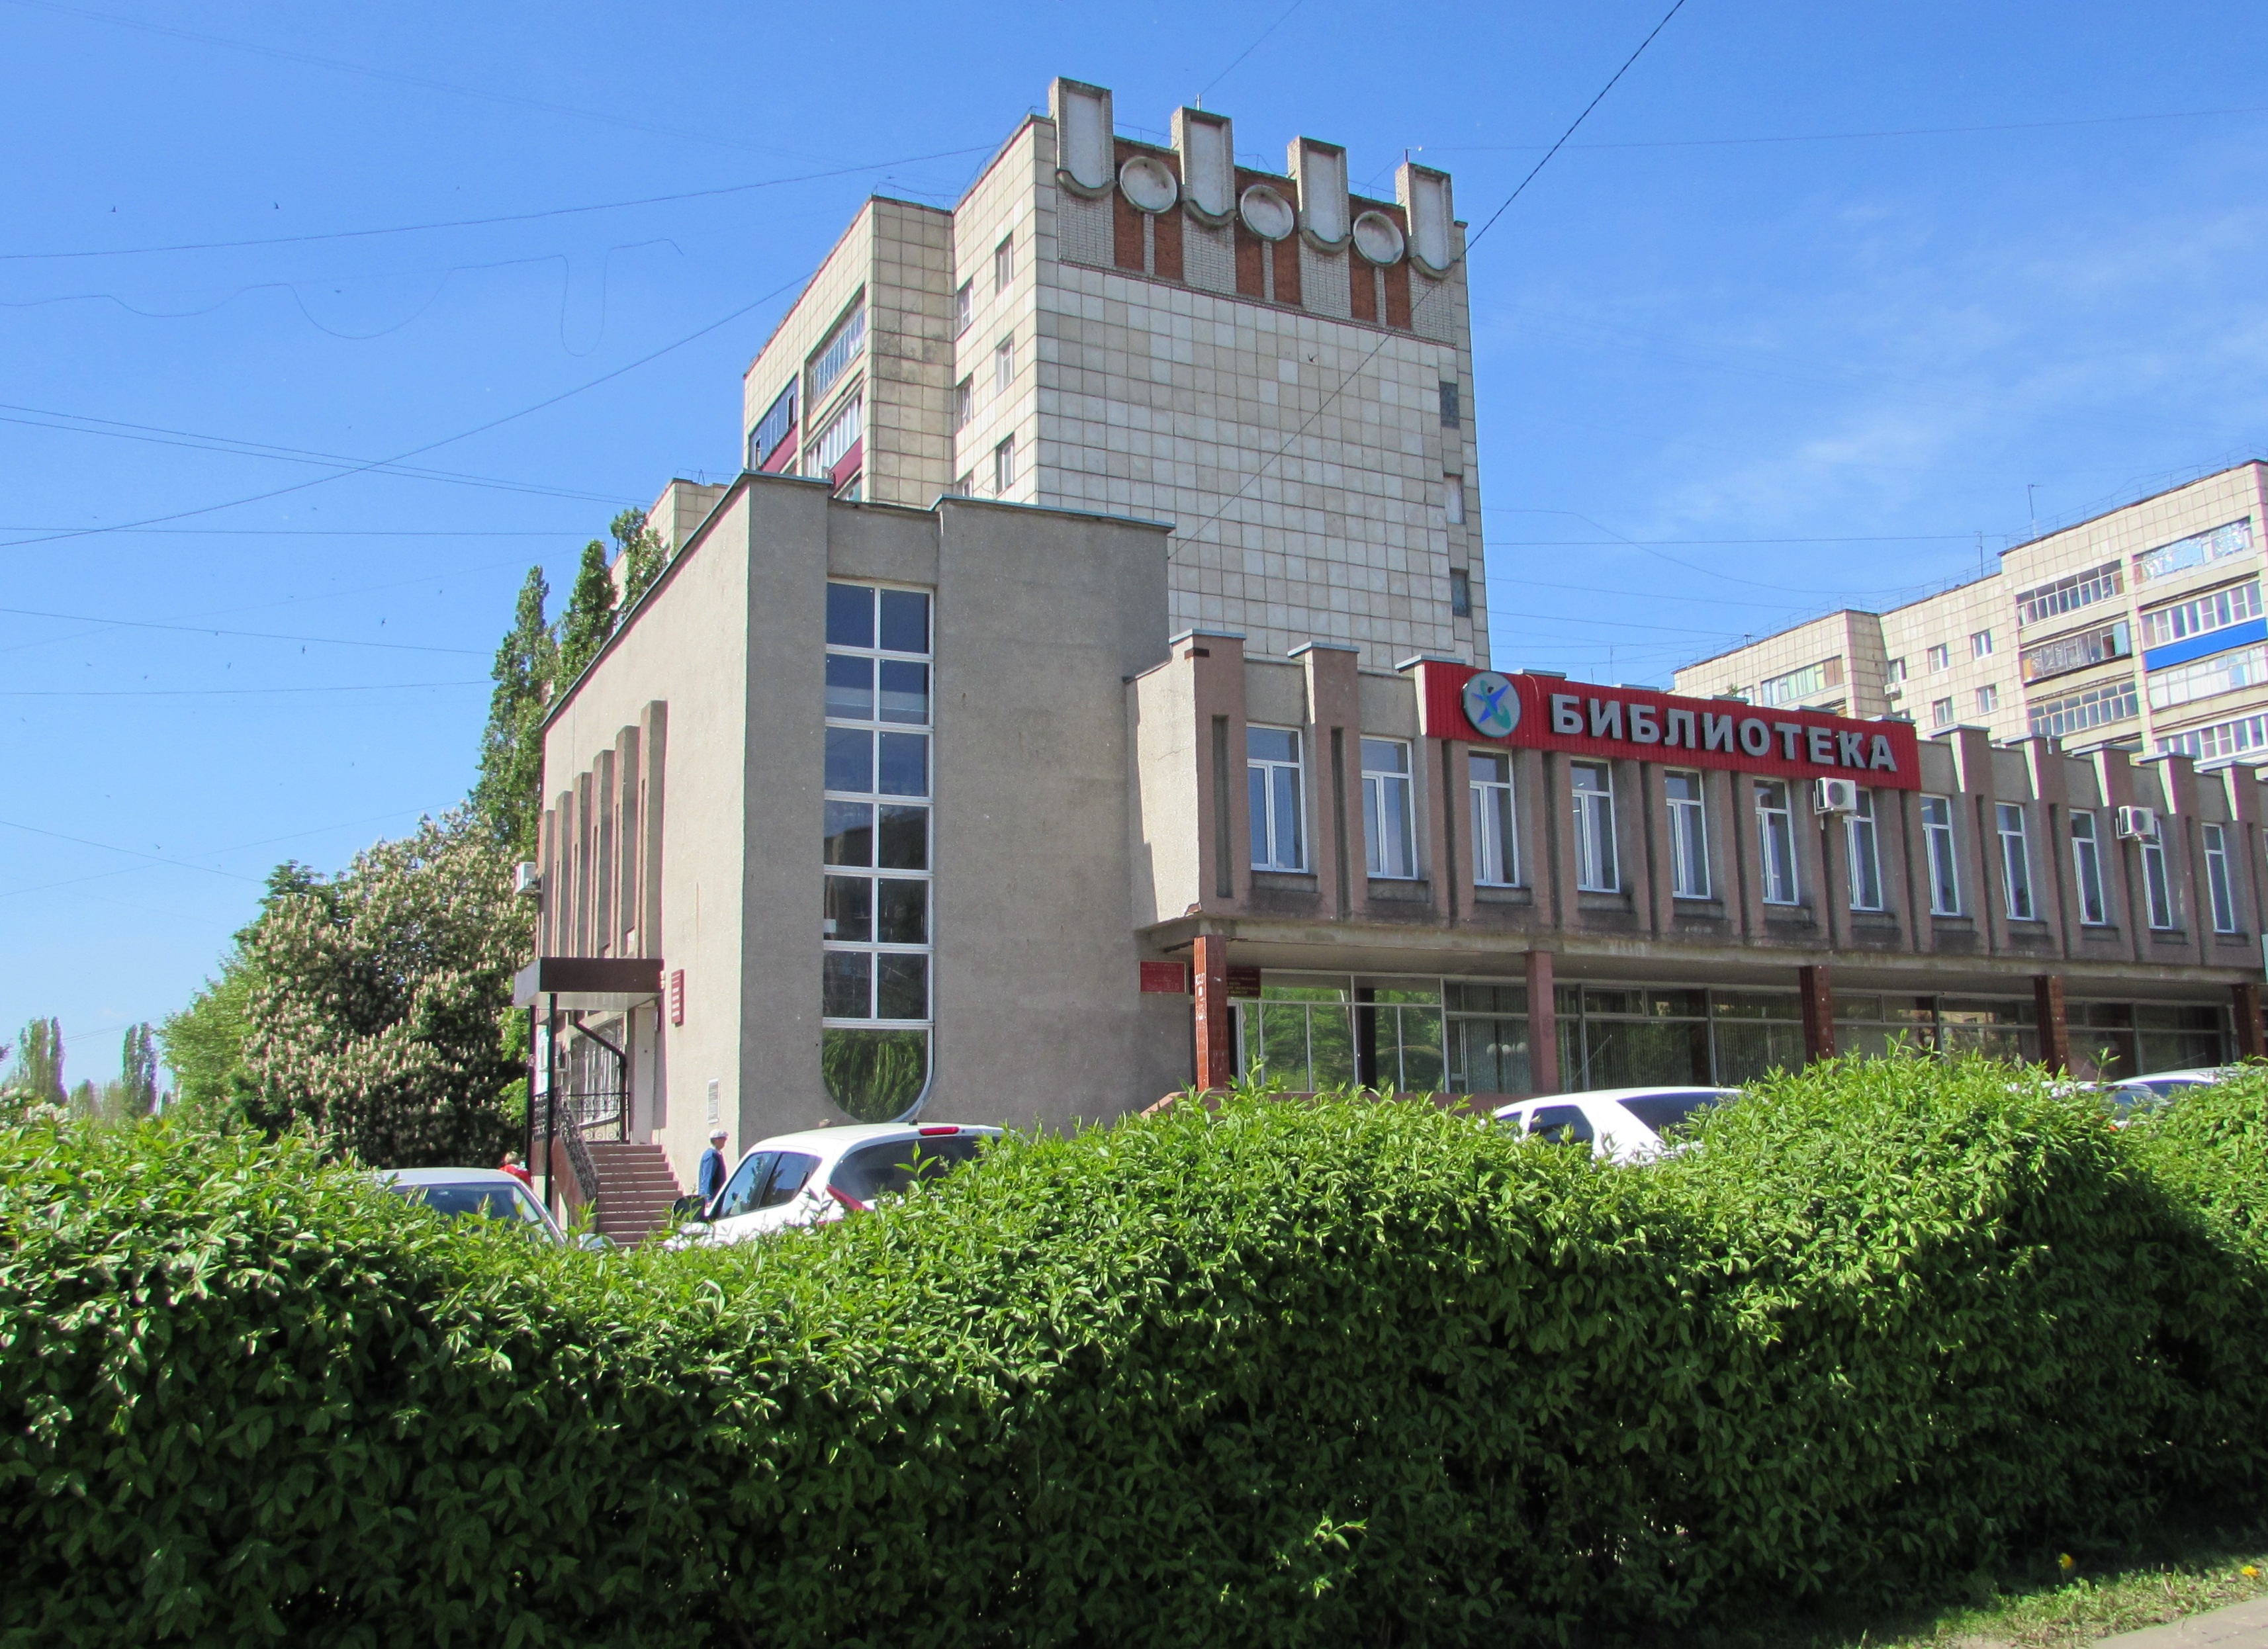 Библиотеки липецкой области